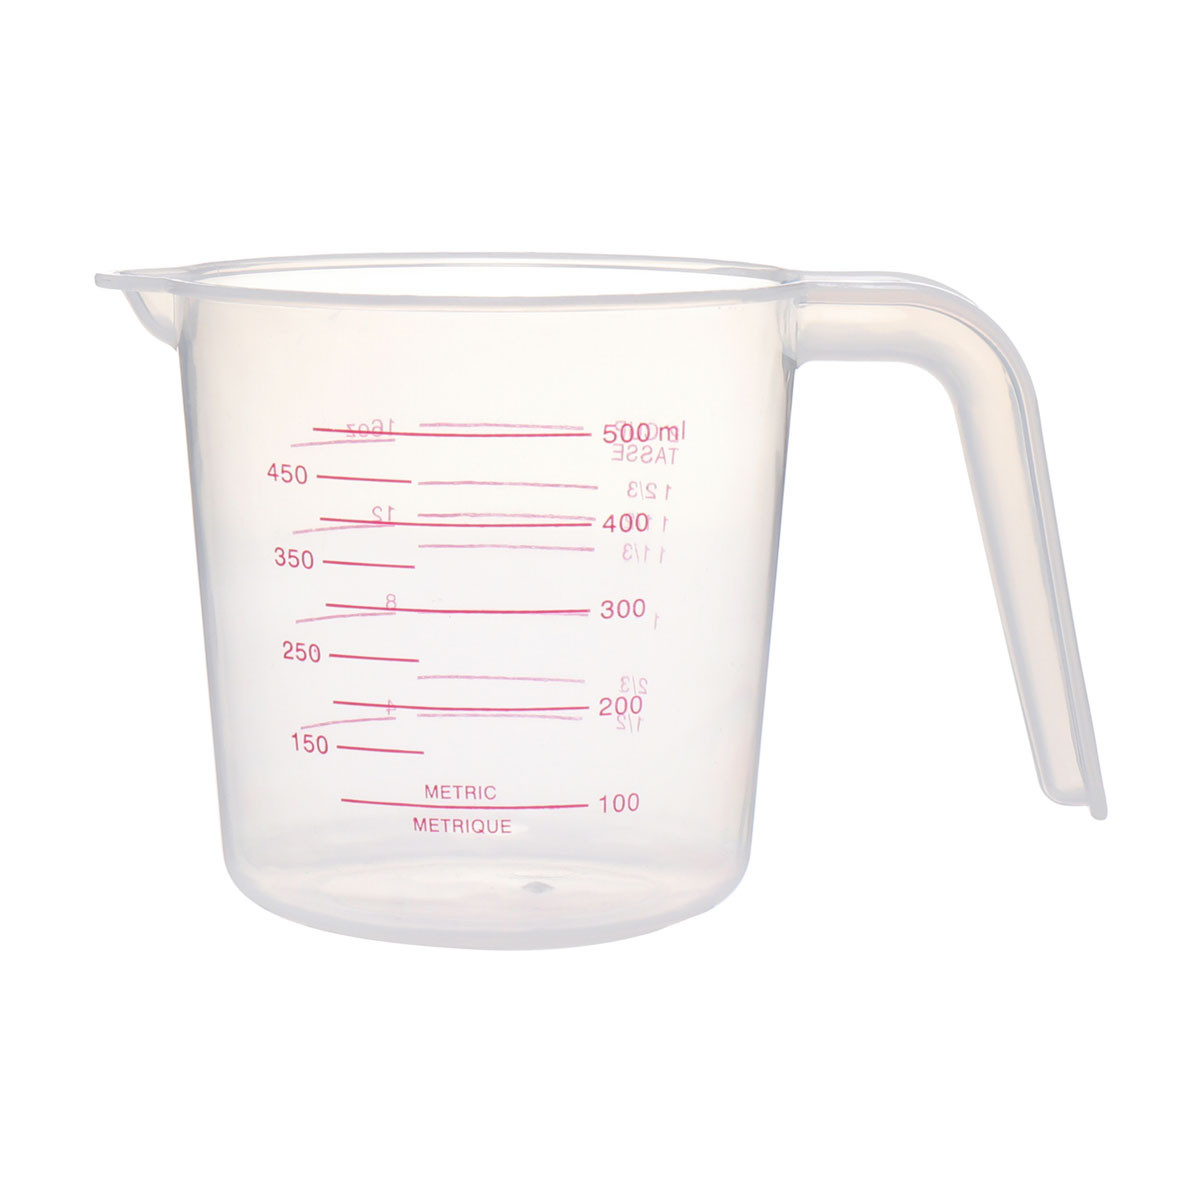 Liquid Measuring Cup - 2.5 Cup